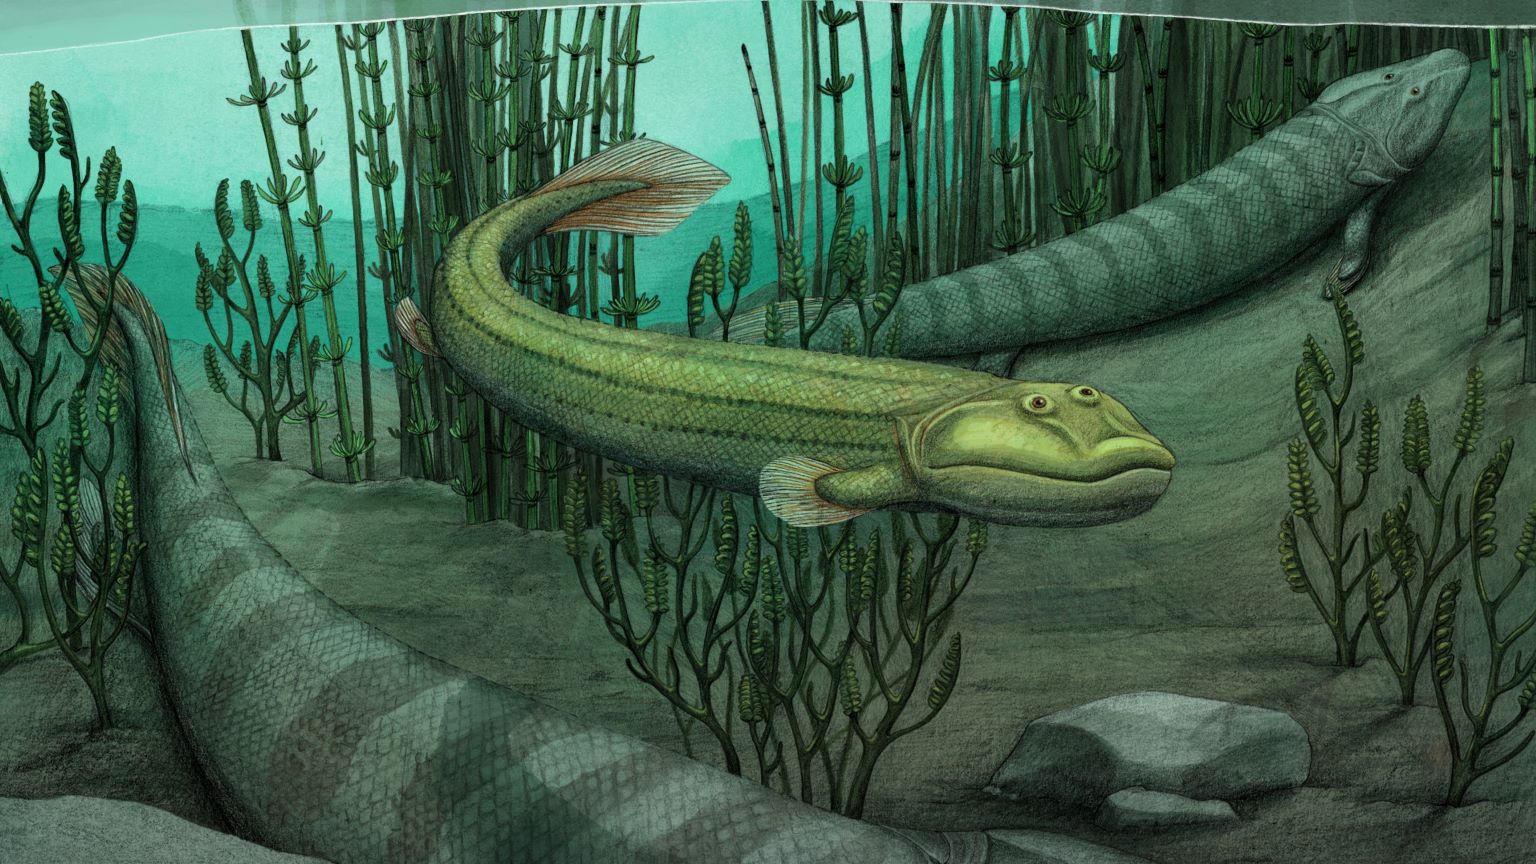 Qikiqtania, a fossil fish